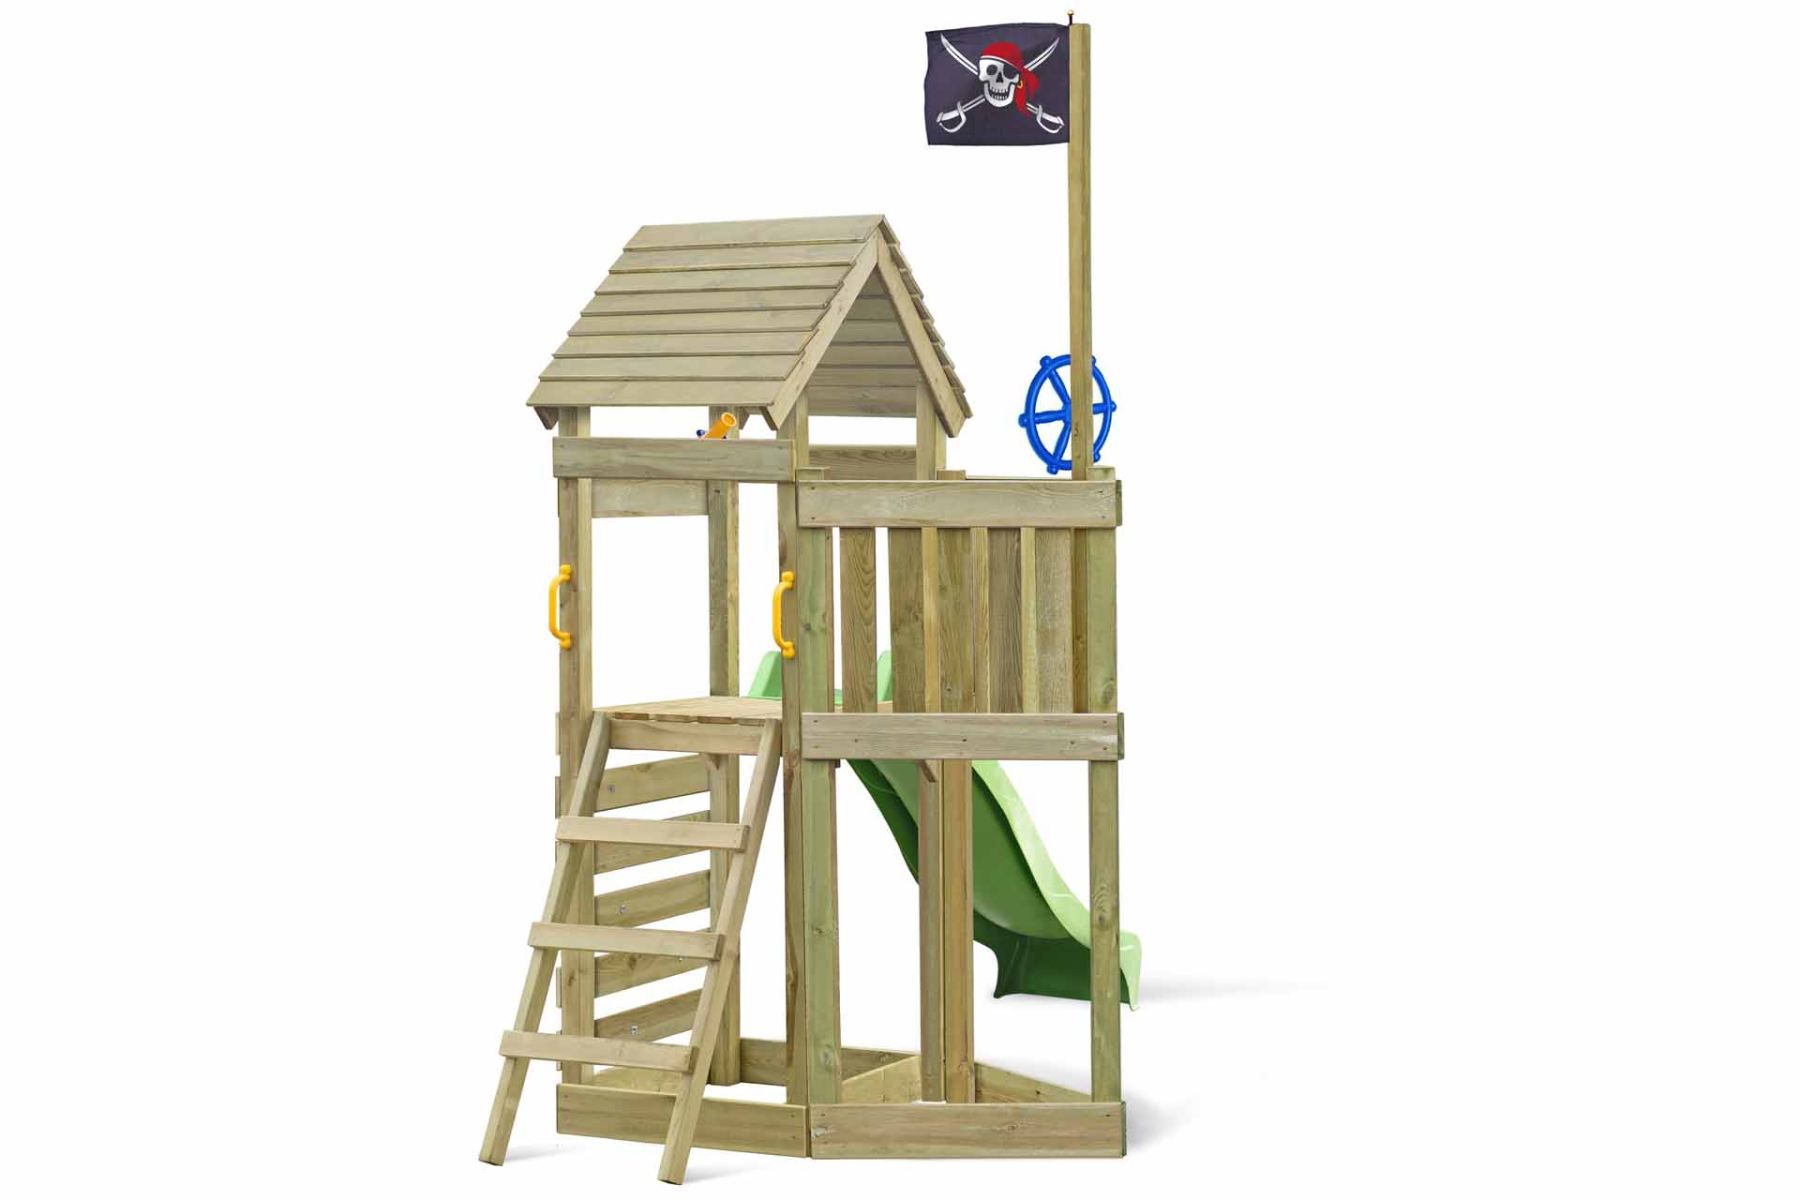 Spielturm Pirat 01 inkl. Sandkasten und Kletterwand - Abmessungen: 156 x 123 cm (L x B)